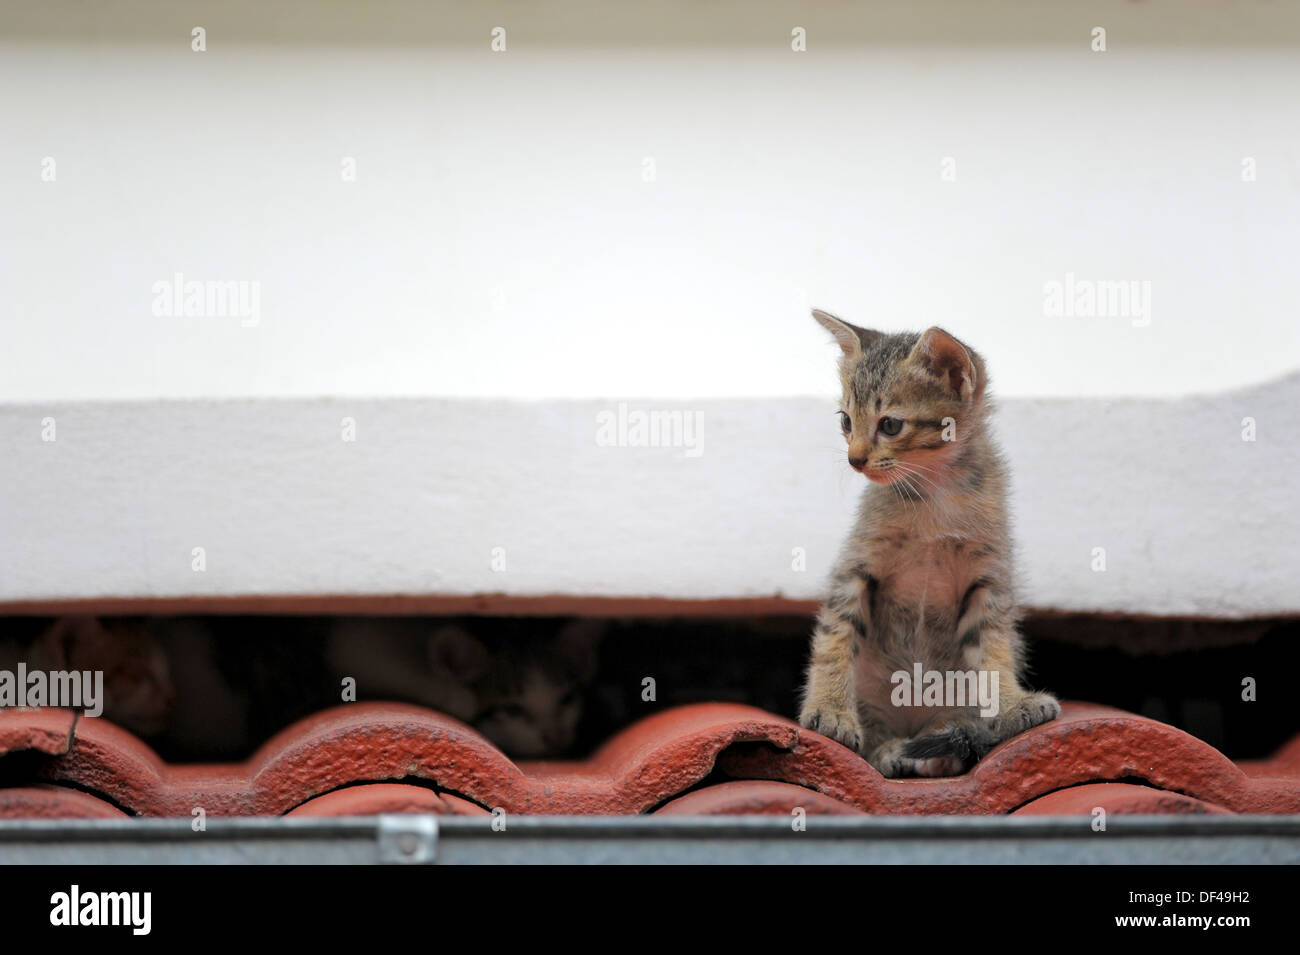 kitten on the roof Stock Photo